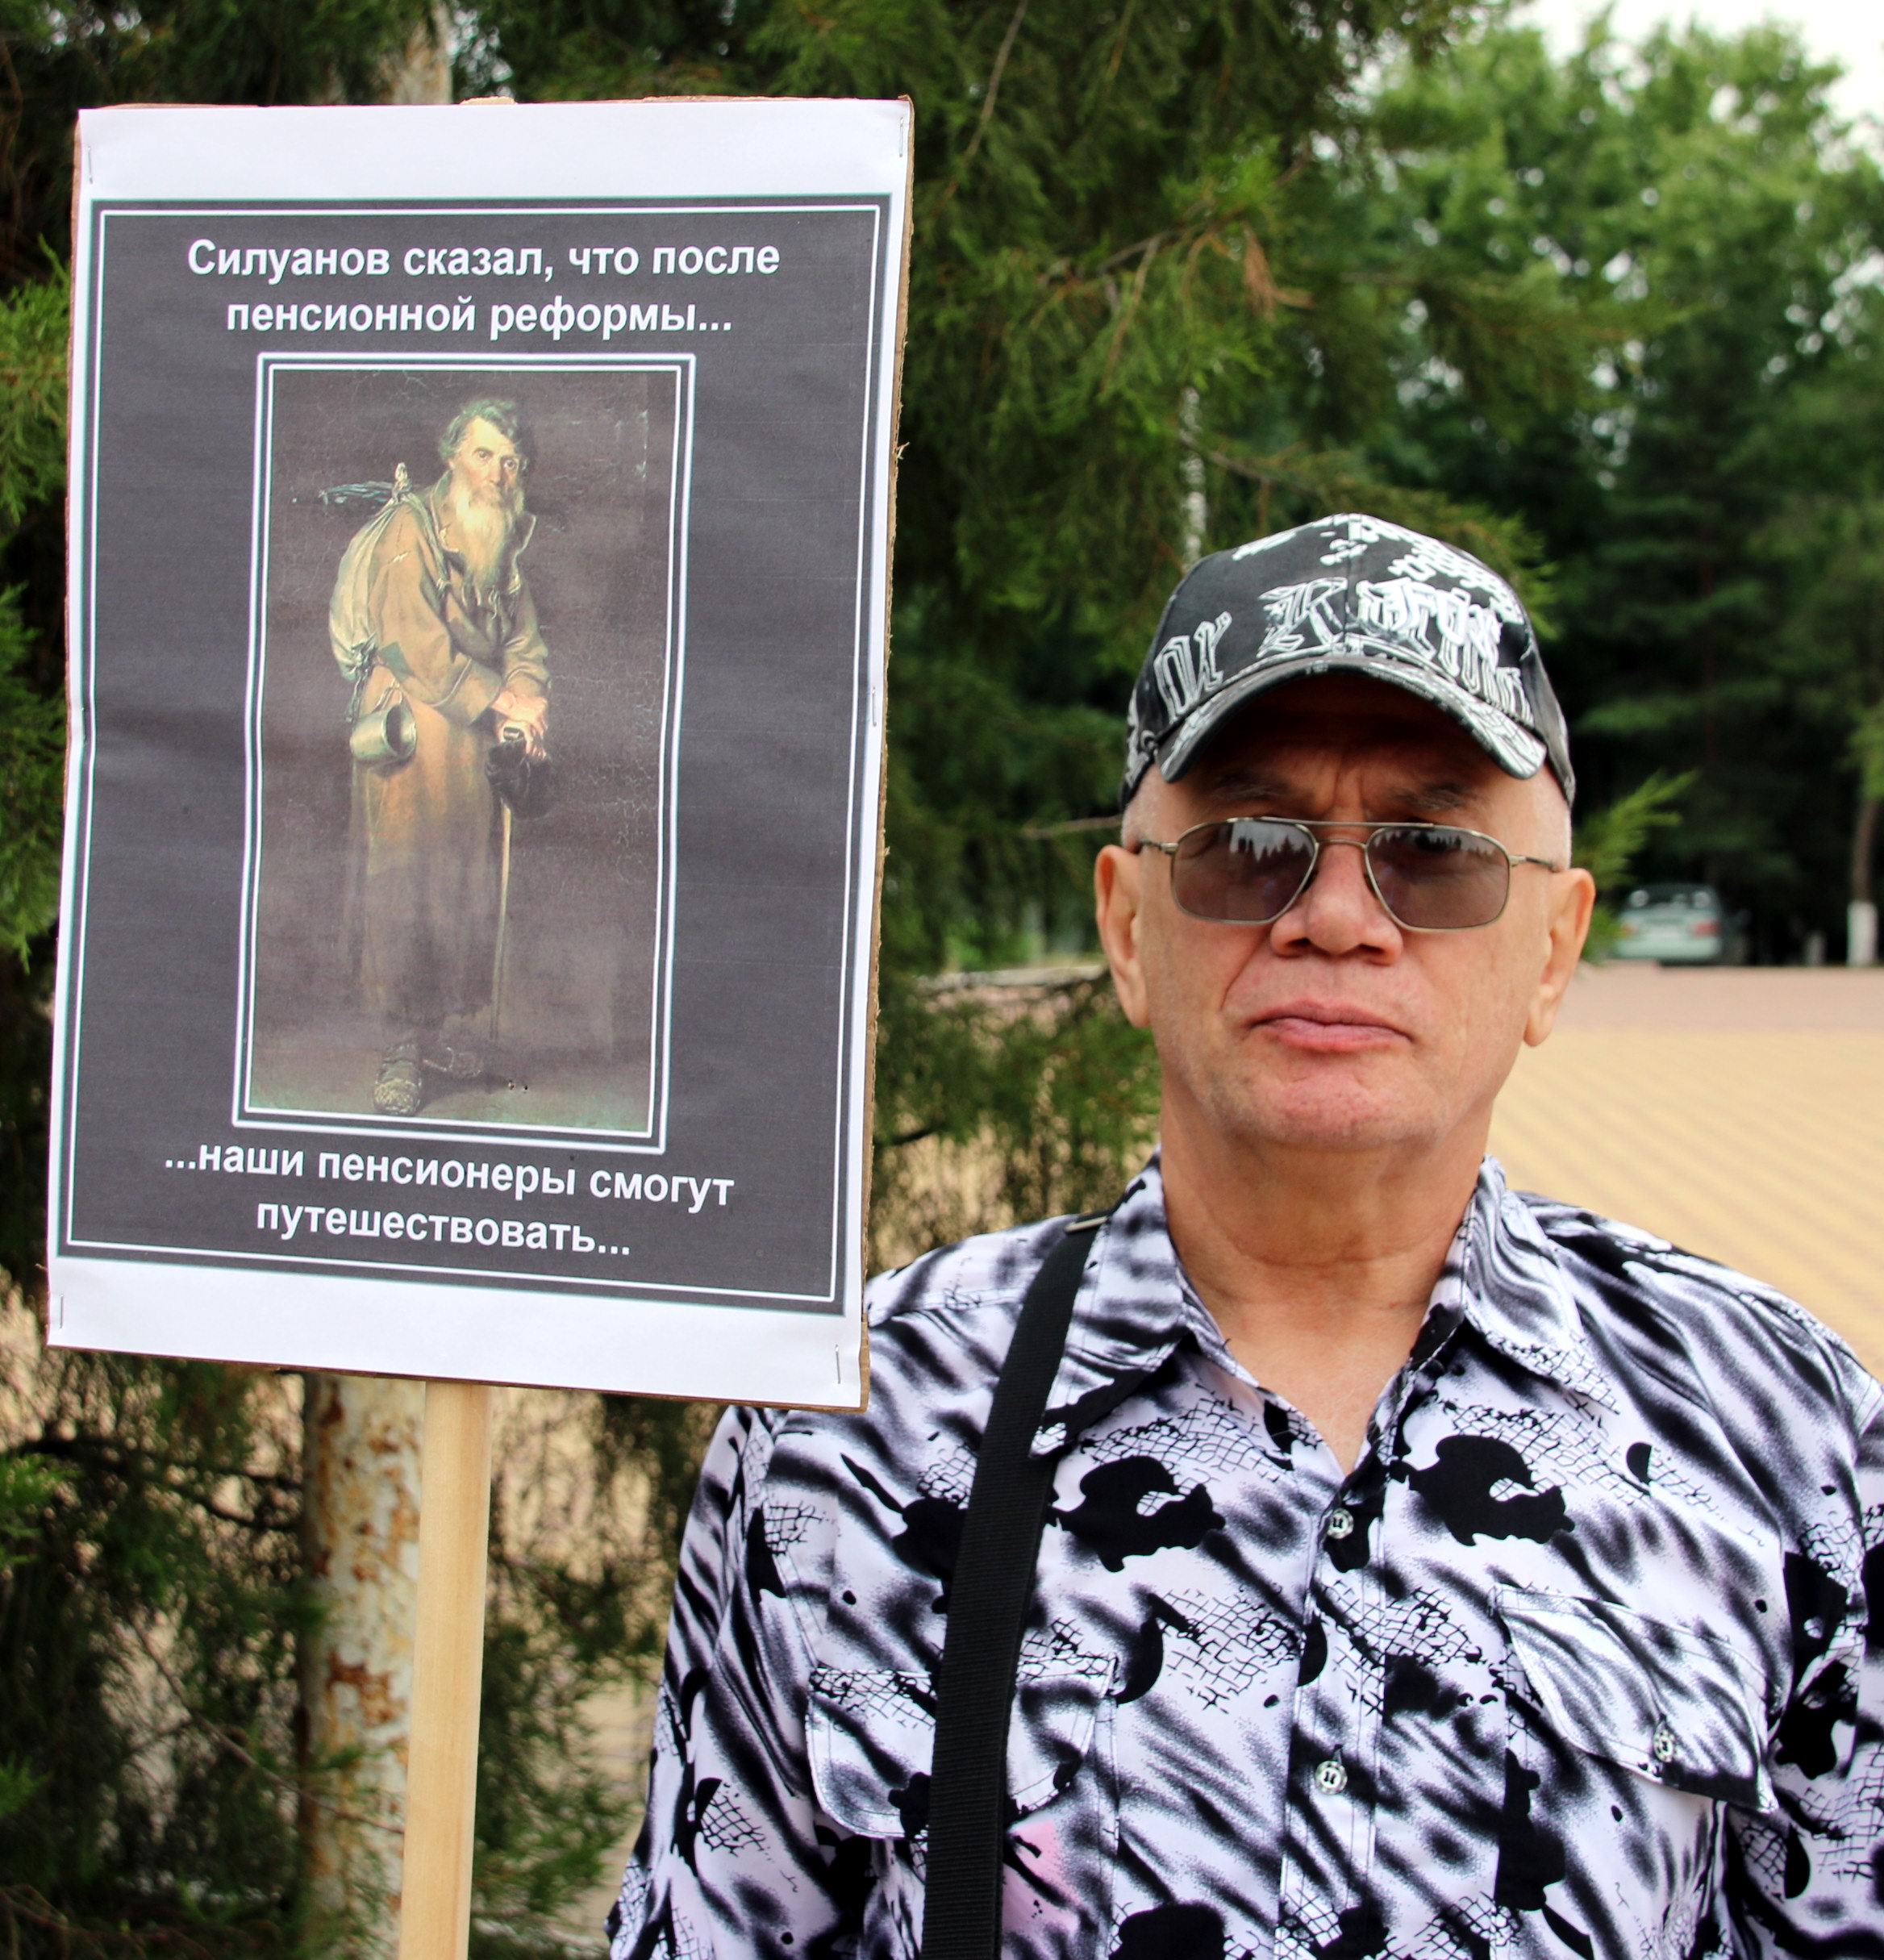 Участник митинга в поддержку Грудинина. Красный Сулин, 13 июля 2019 года. Фото Вячеслава Прудникова для "Кавказского узла".